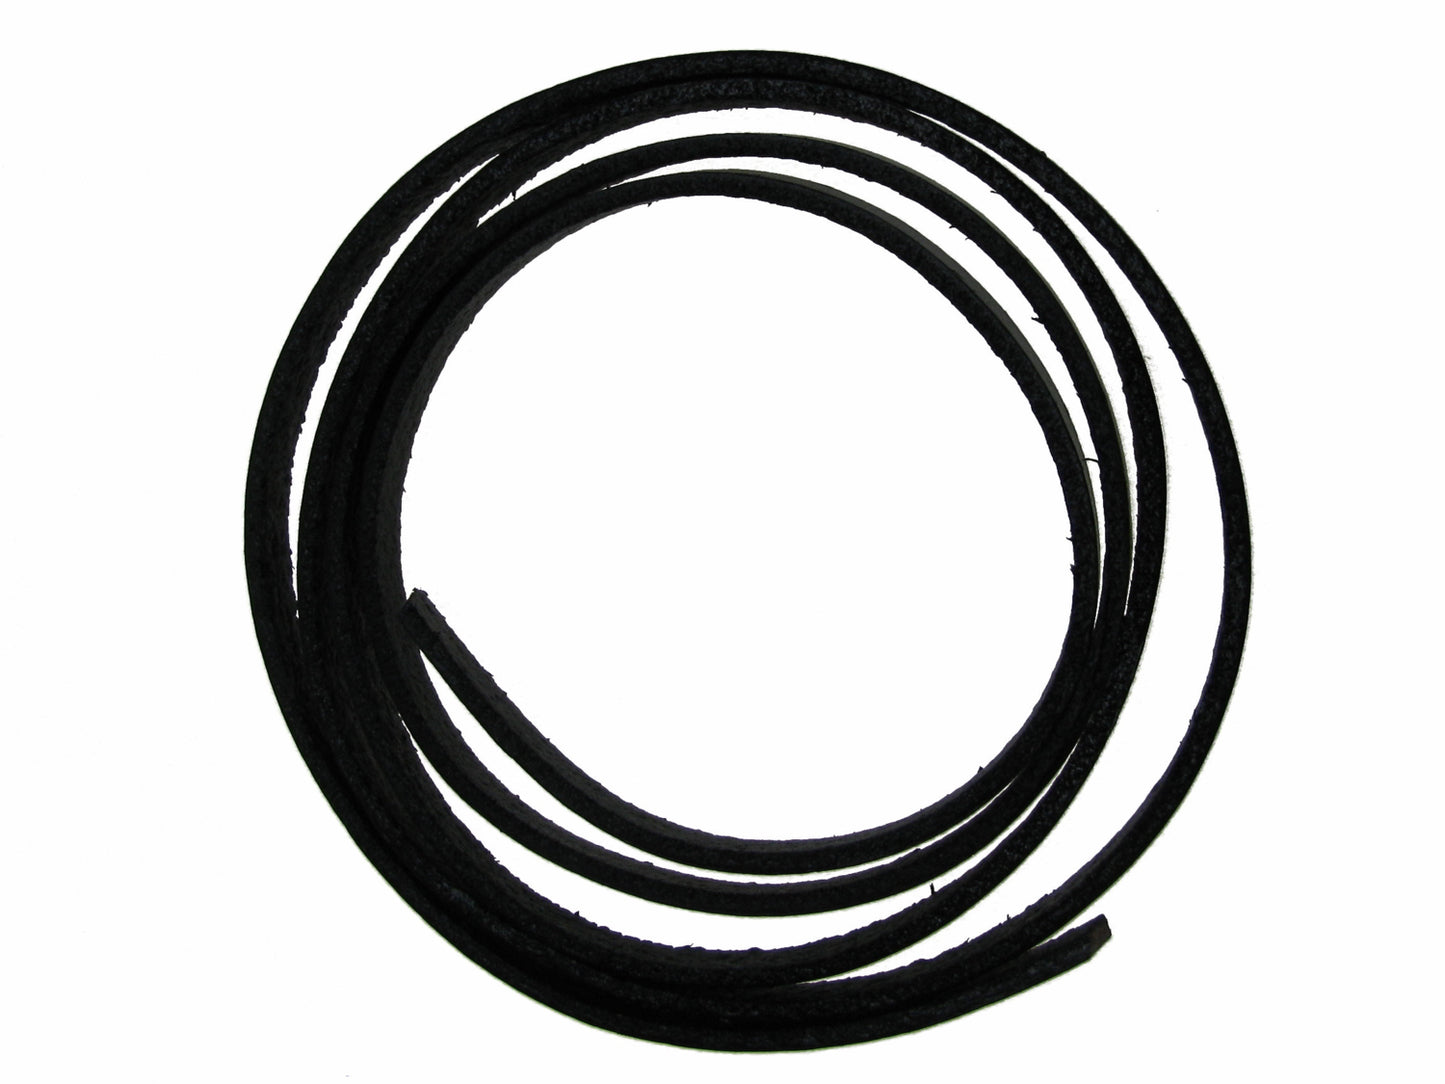 1m Lederband schwarz flach, breit 5 x 2mm, ideal für Armbänder, Schmuck machen